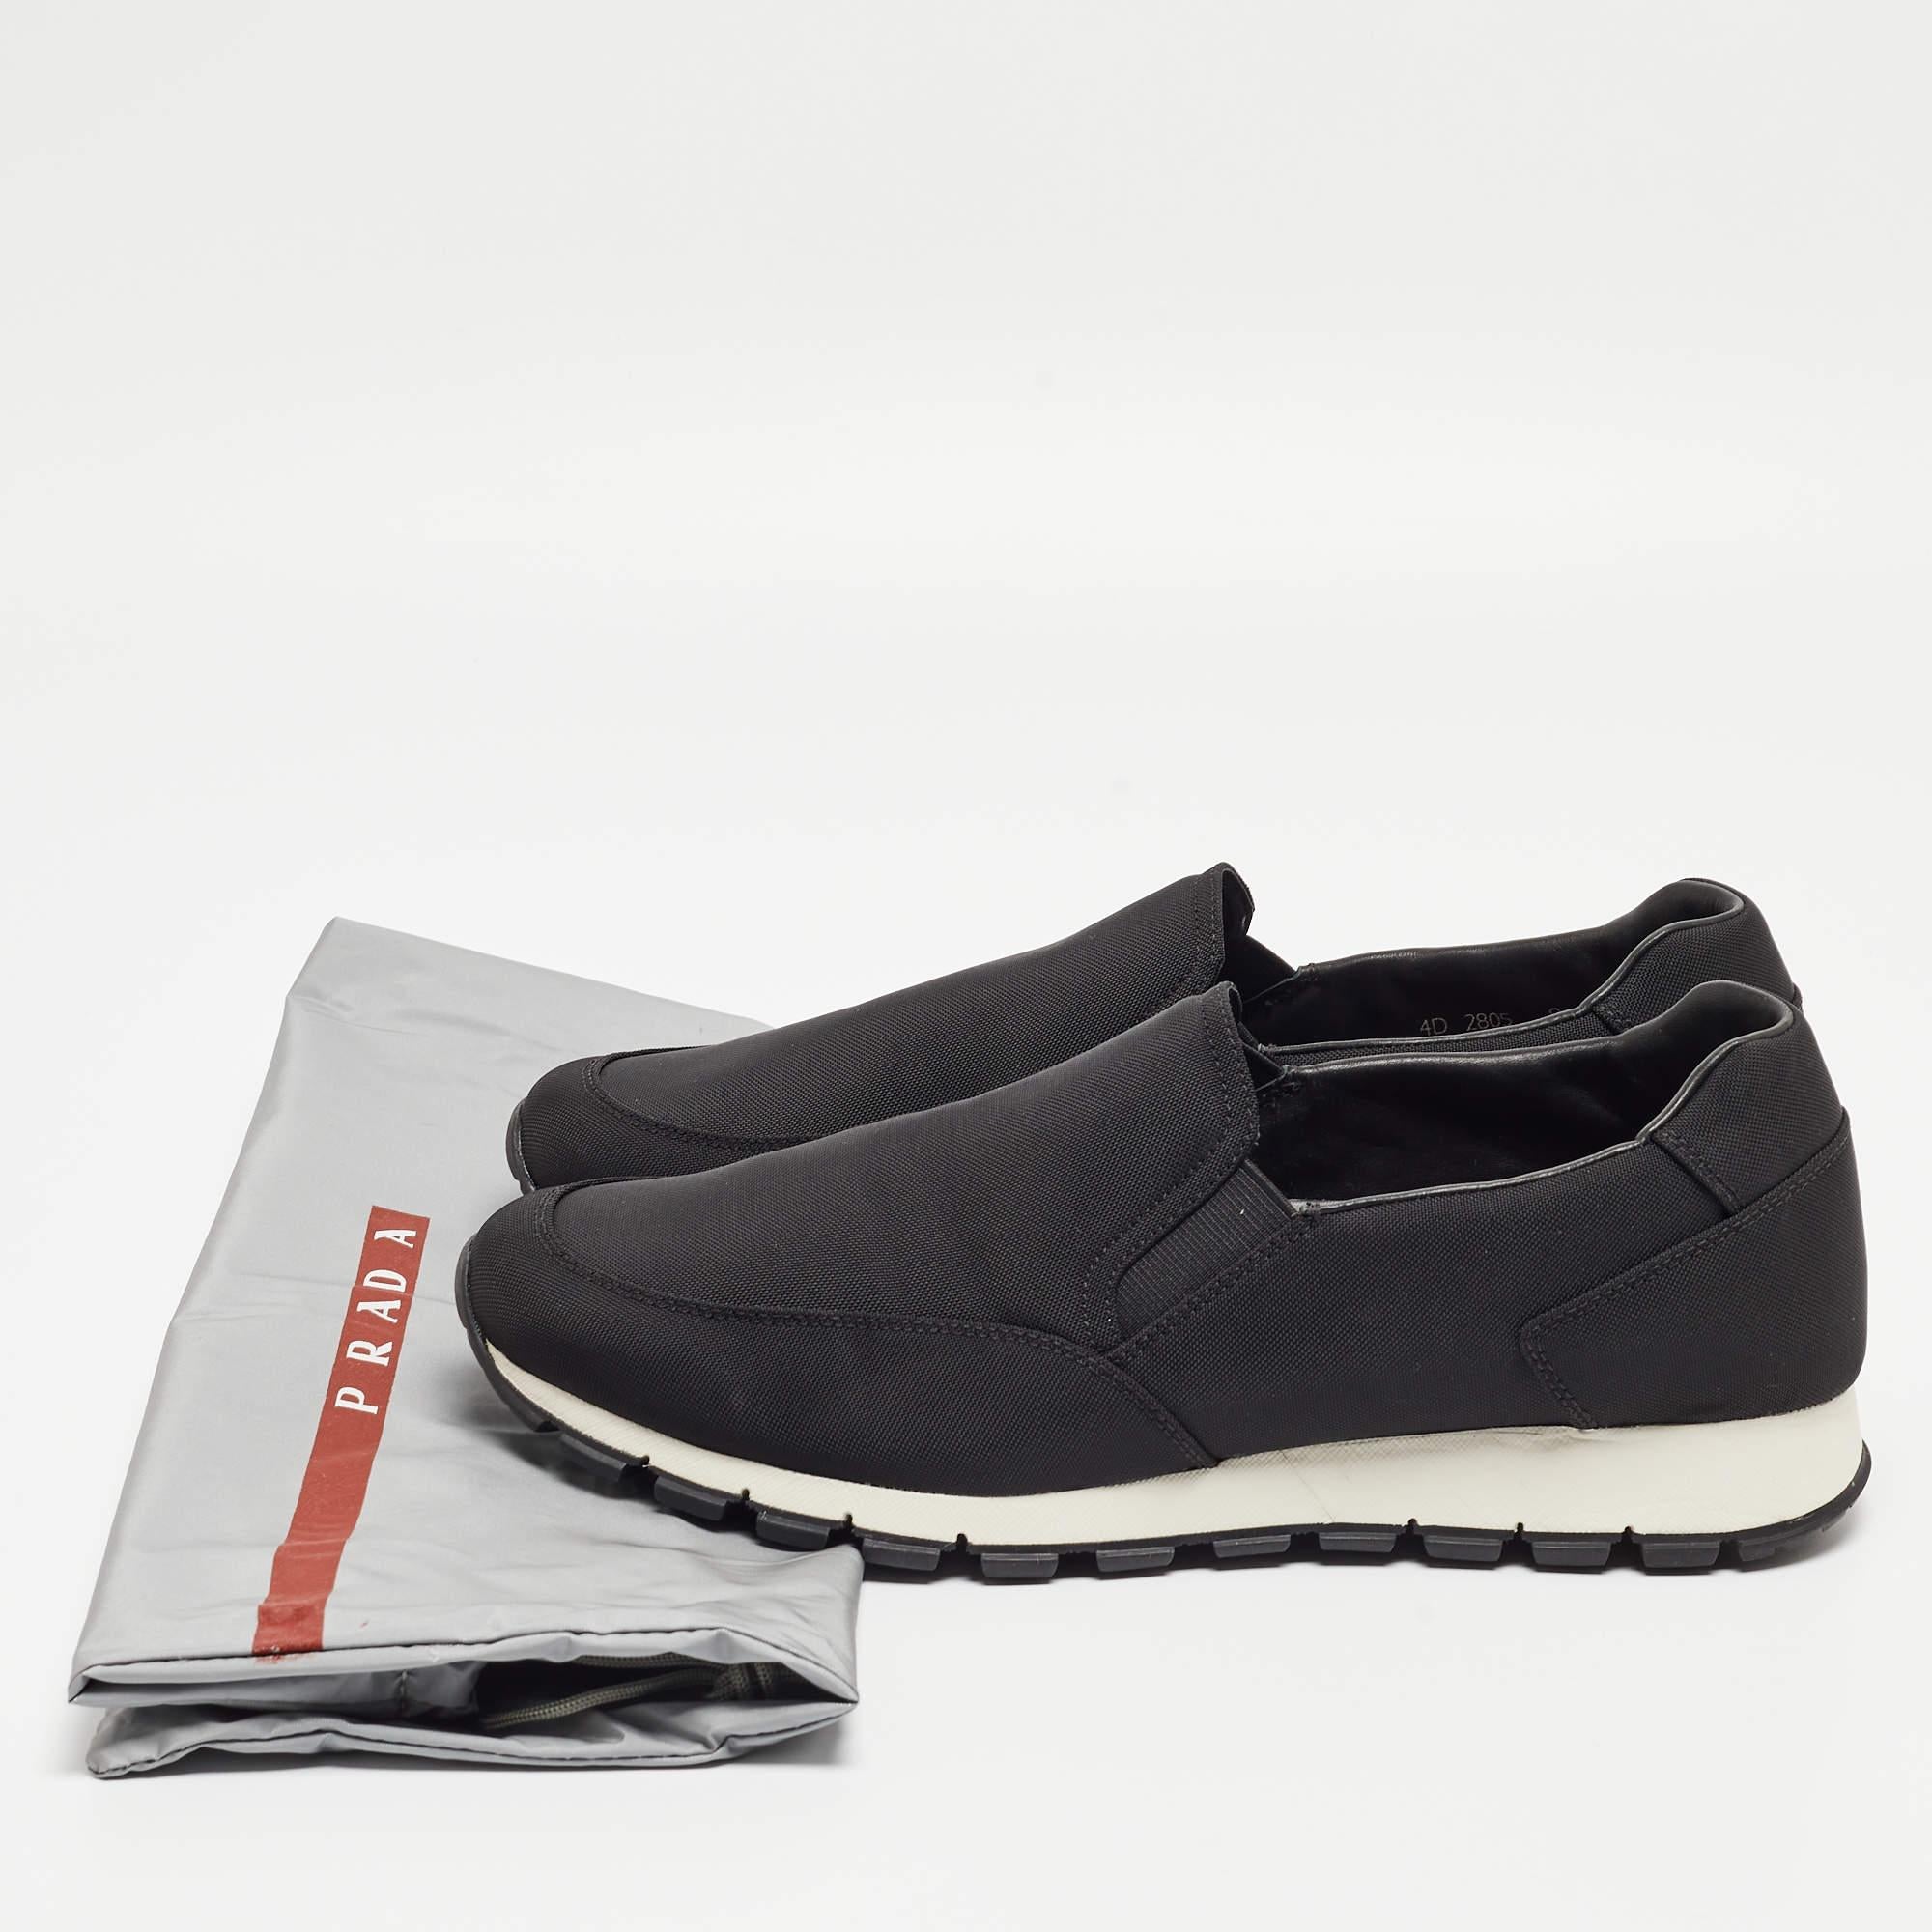 Prada Sport Black Nylon Slip On Sneakers Size 43 5